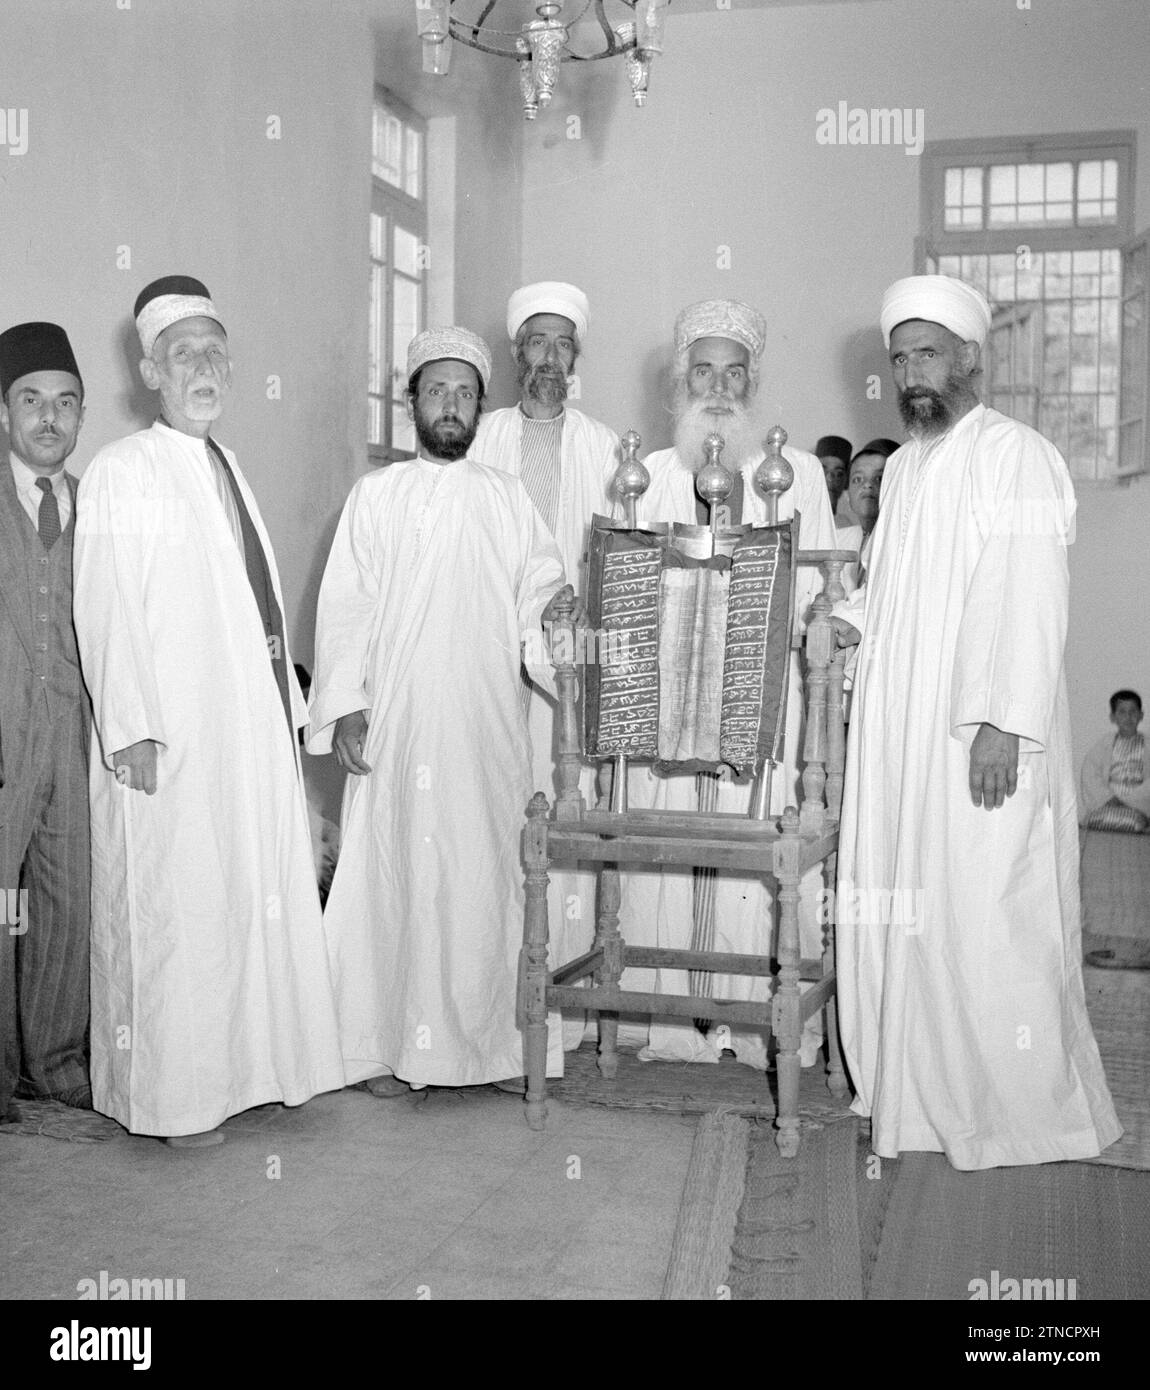 Un groupe de Samaritains dans leur maison de prière avec leurs écritures (parchemin de prière) Date : 1 janvier 1950 Banque D'Images